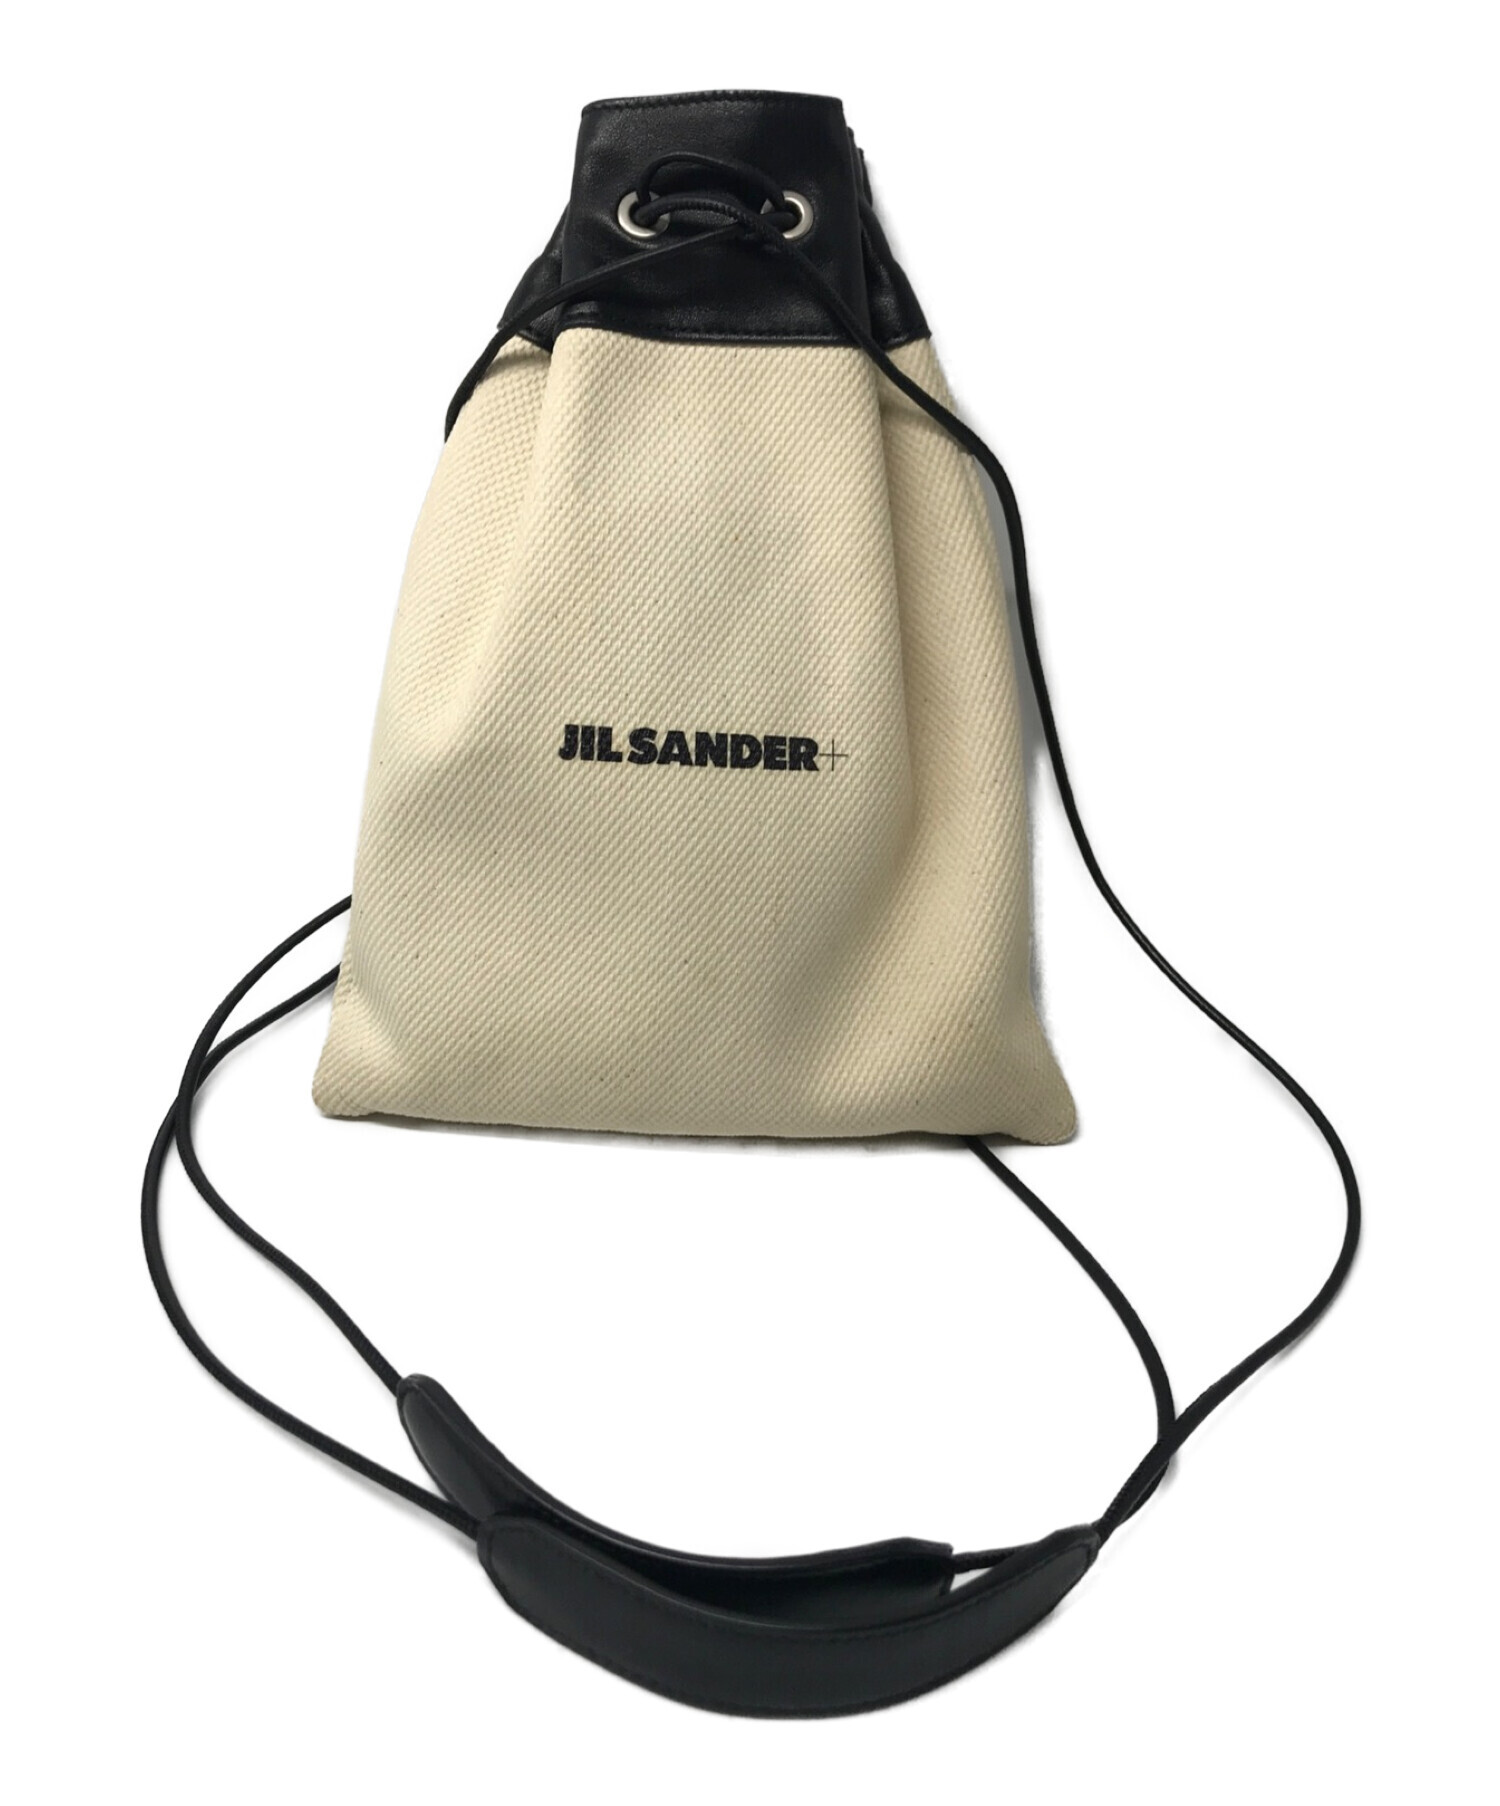 ジルサンダープラス巾着バッグ JIL SANDAR Plus - トートバッグ